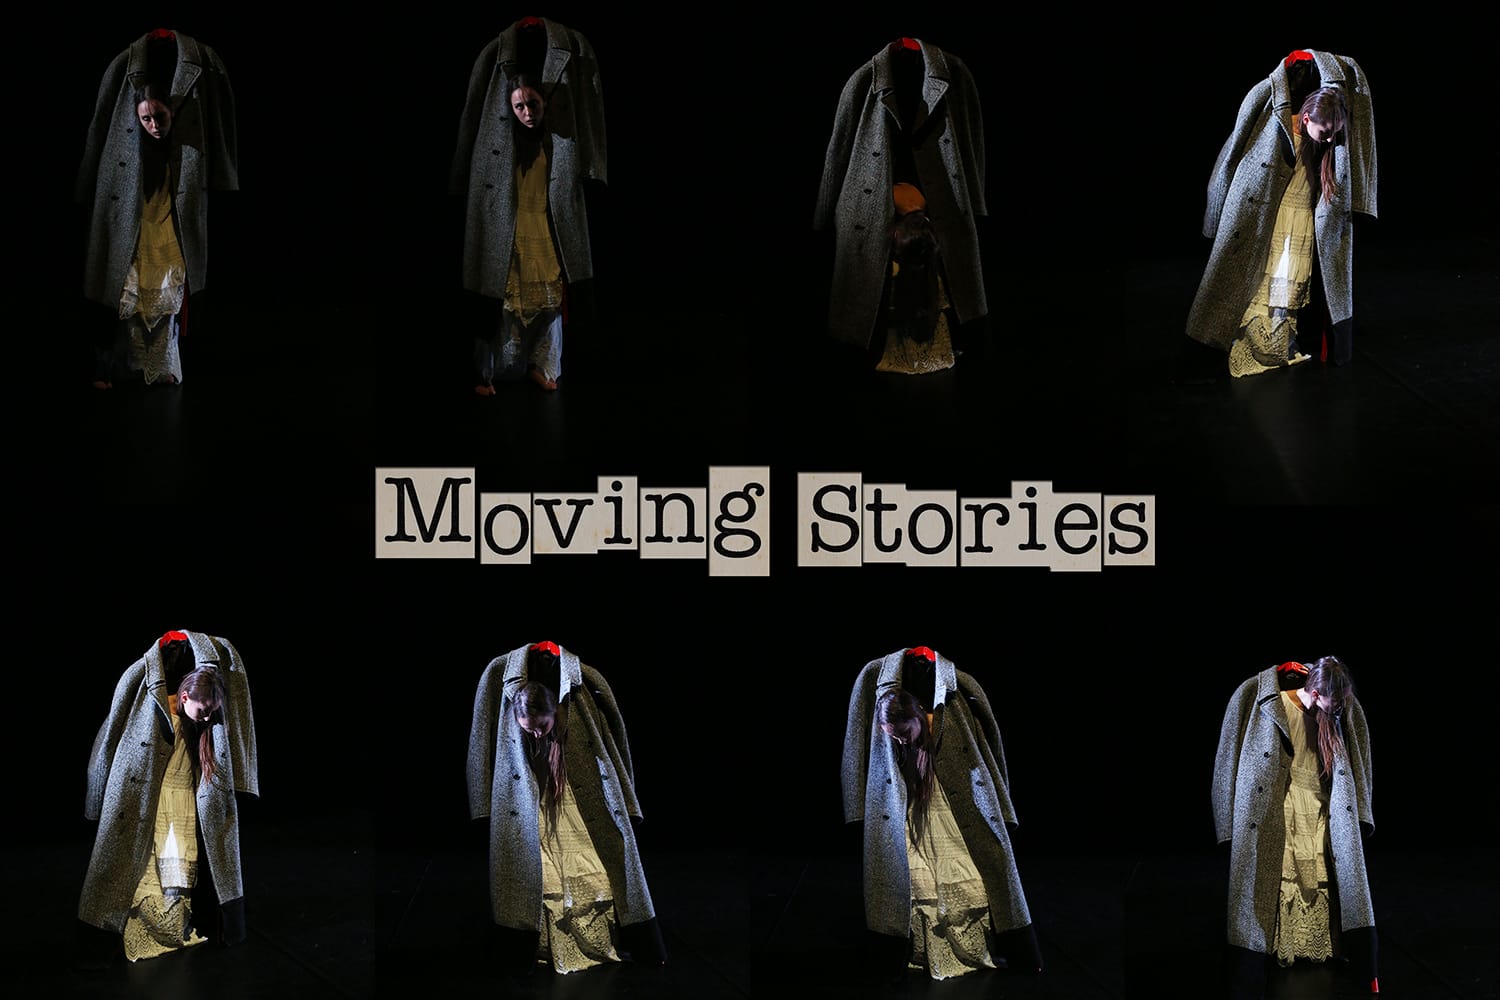 Teatro Studio: al via la III edizione di “Moving Stories” diretto da Paola Vezzosi